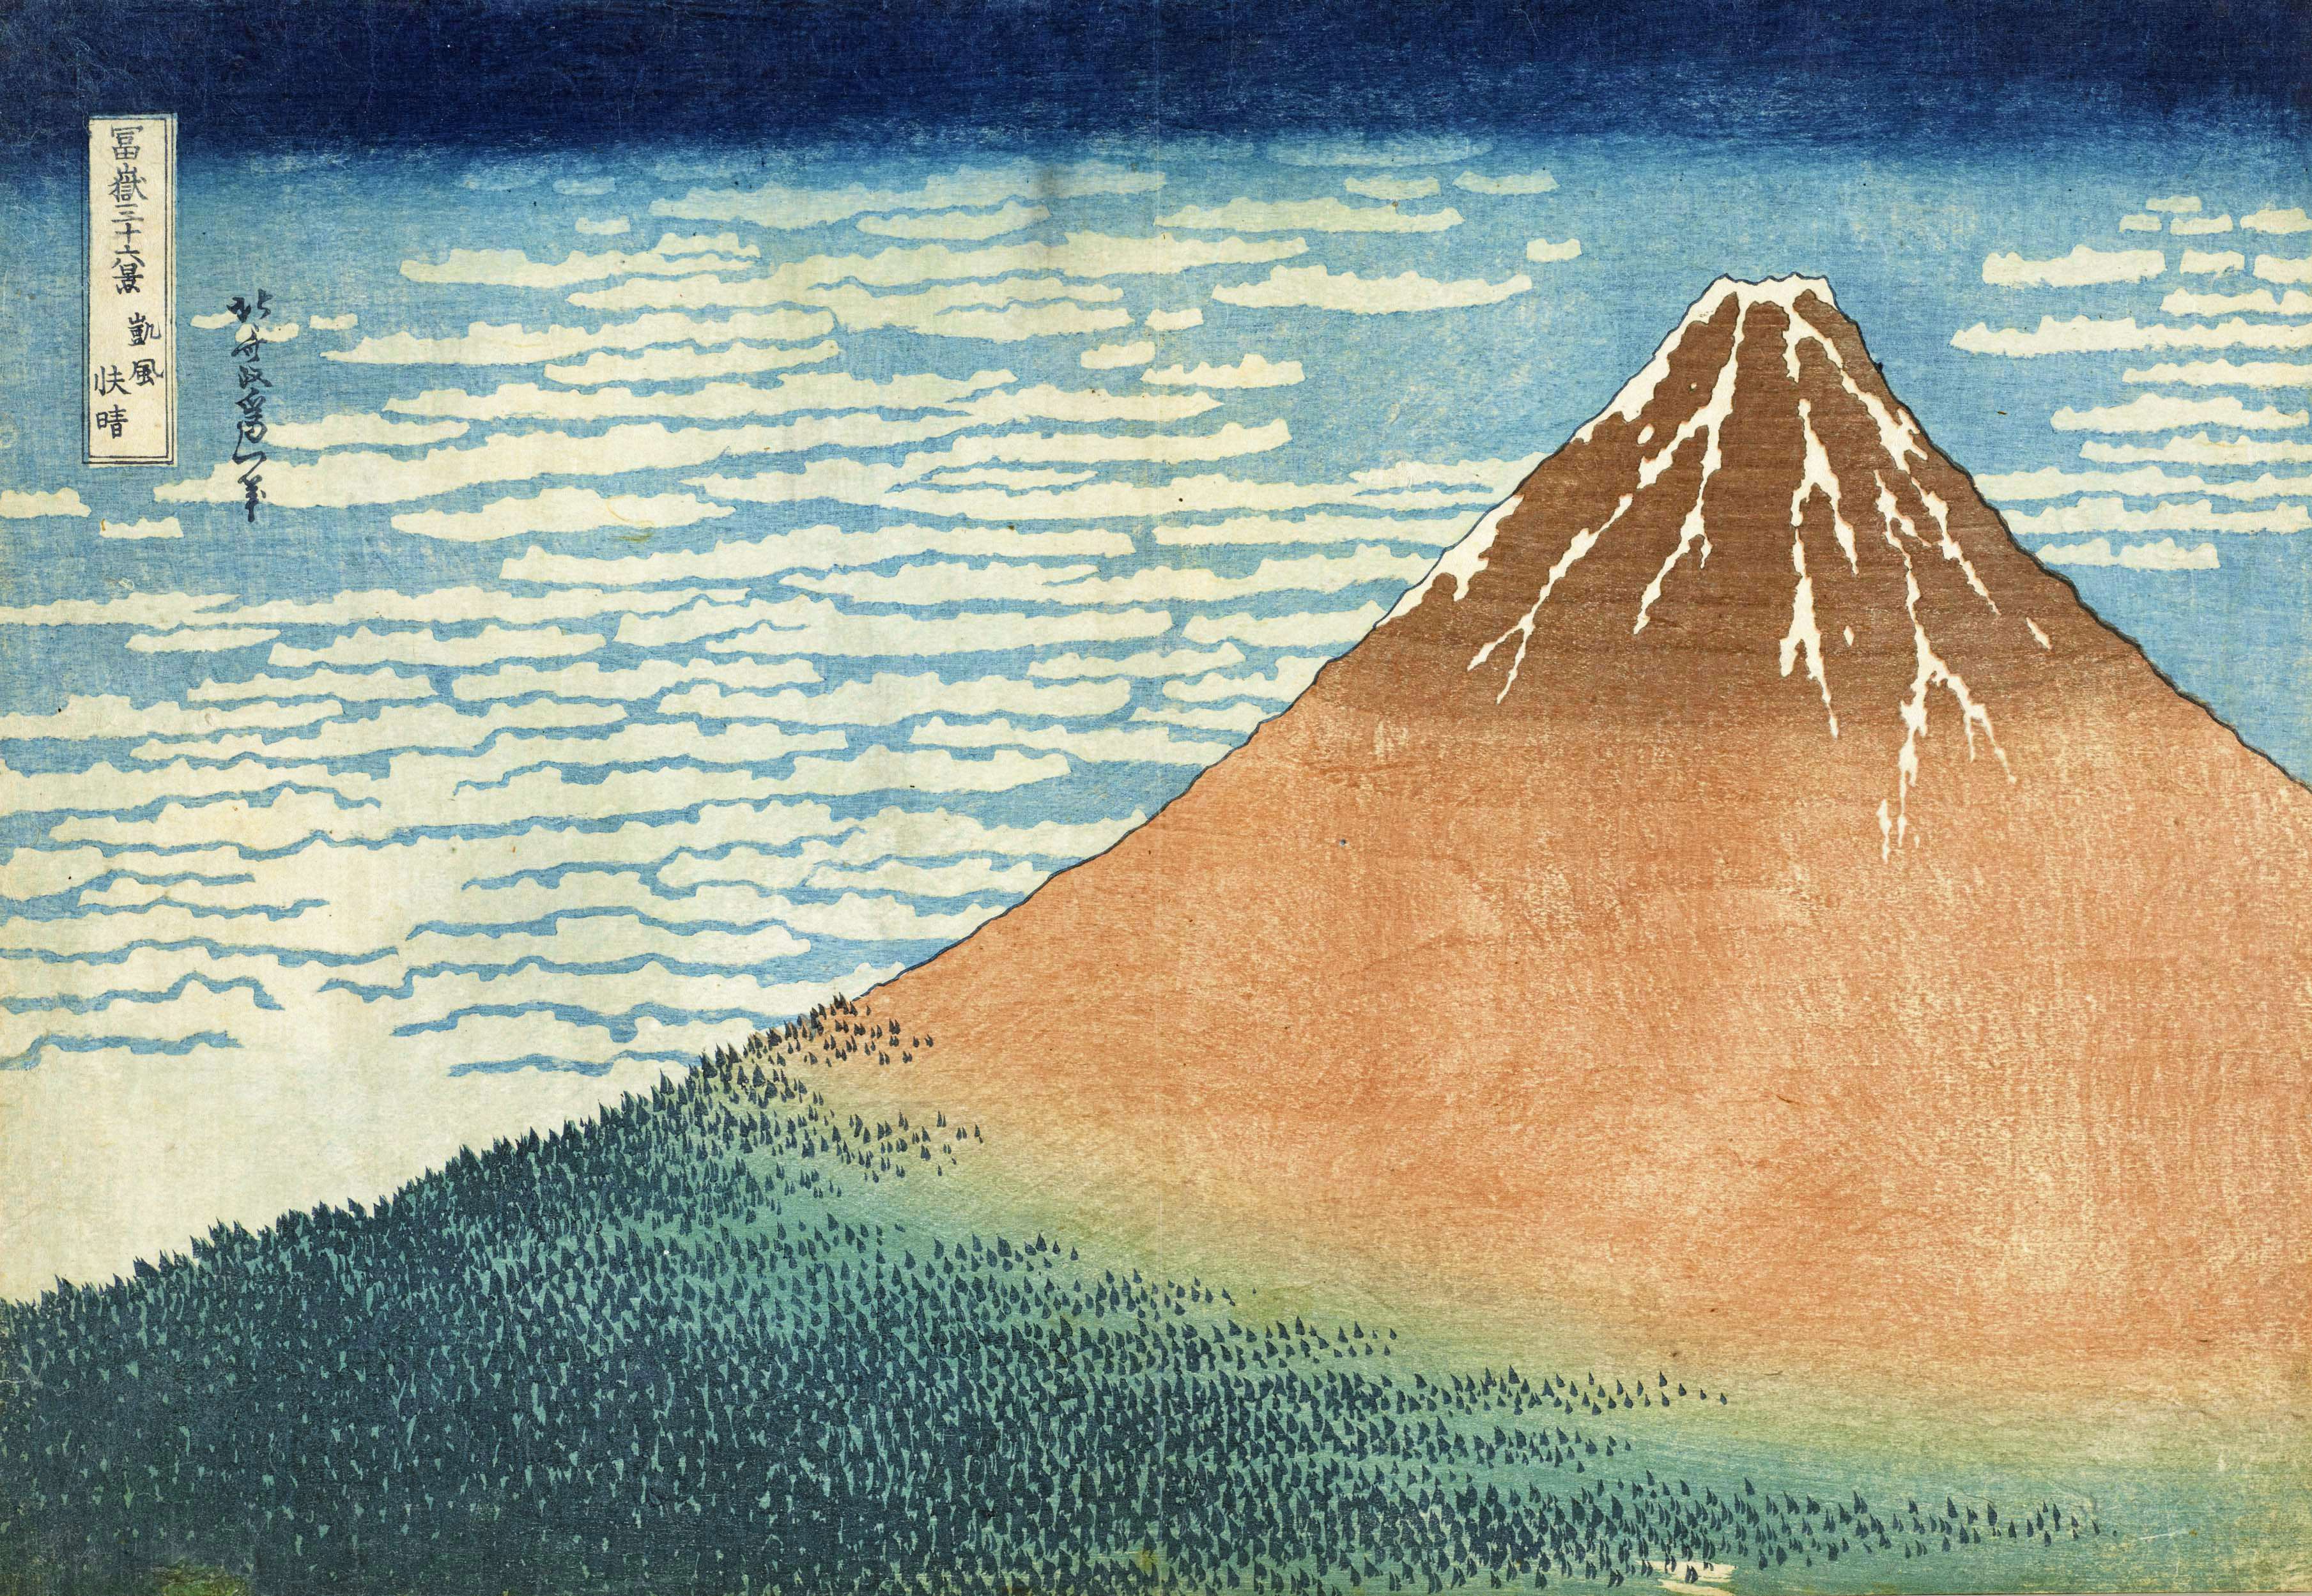 冨嶽三十六景」が誕生するまで。太田記念美術館で、富士山を描き続けた 